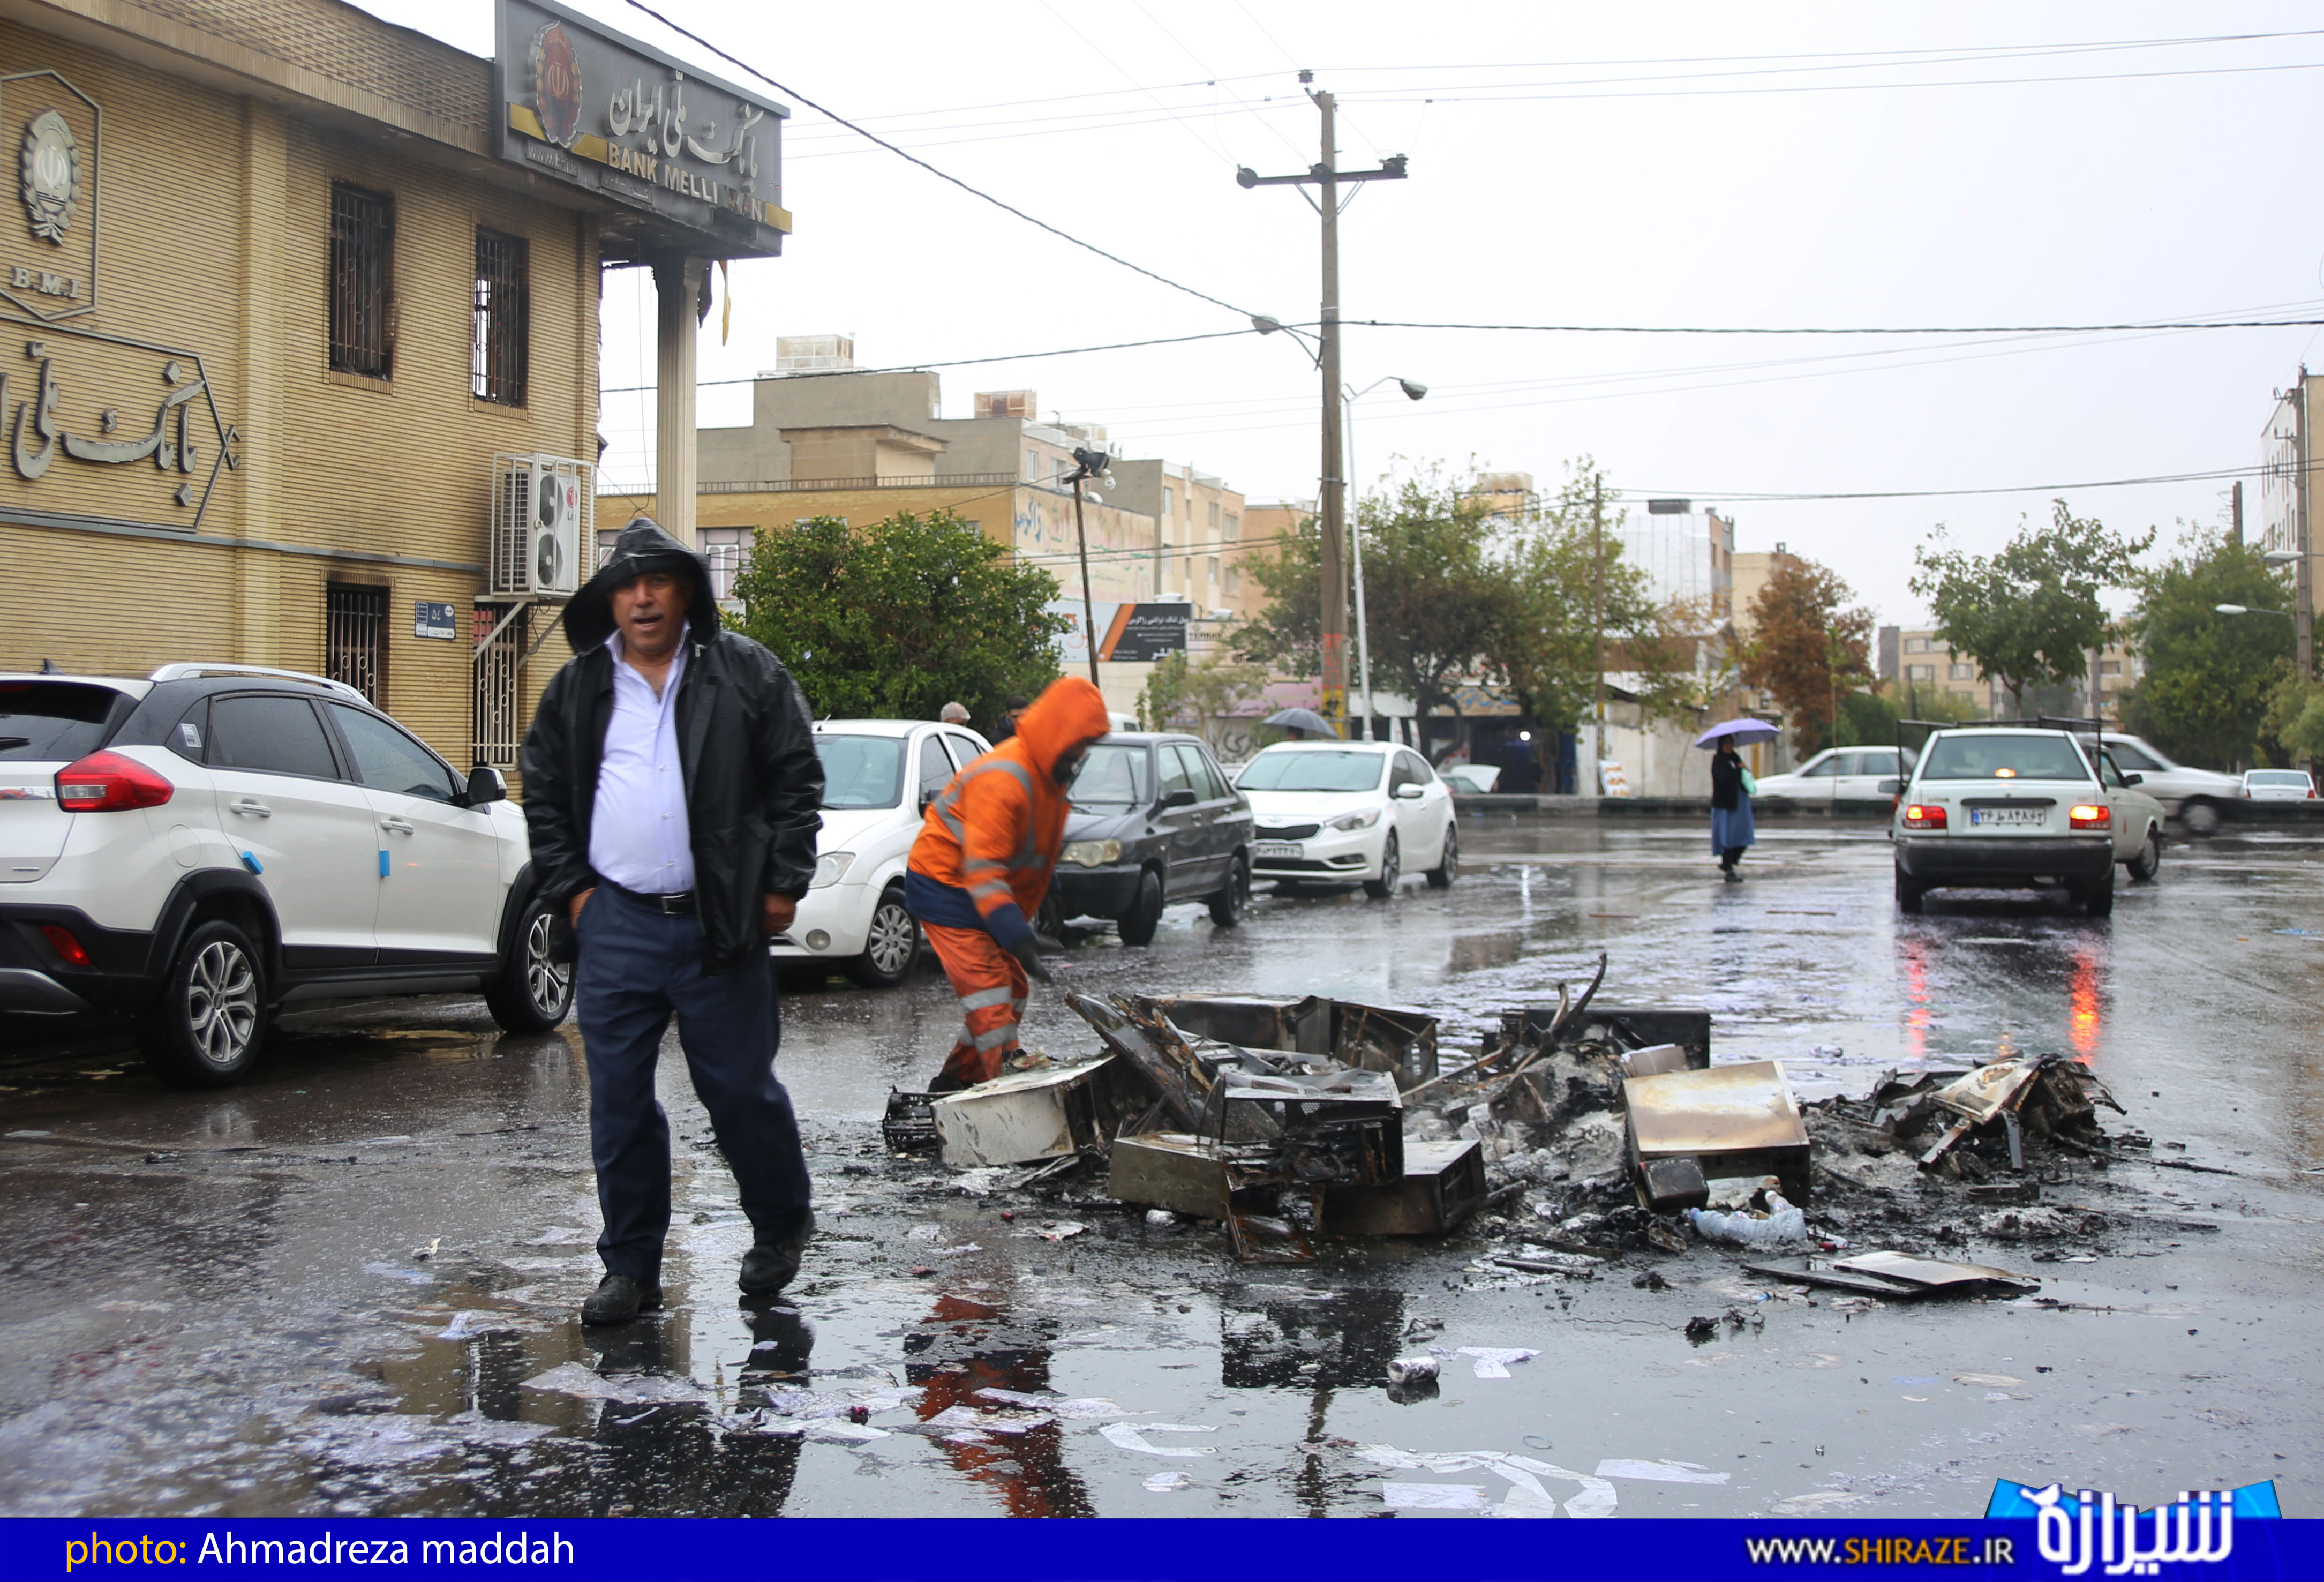 بیش از ۳۰۰ میلیارد تومان به شهرداری شیراز خسارت وارد شده است/ بیشترین تخریب ها در جنوب و غرب شیراز صورت گرفته